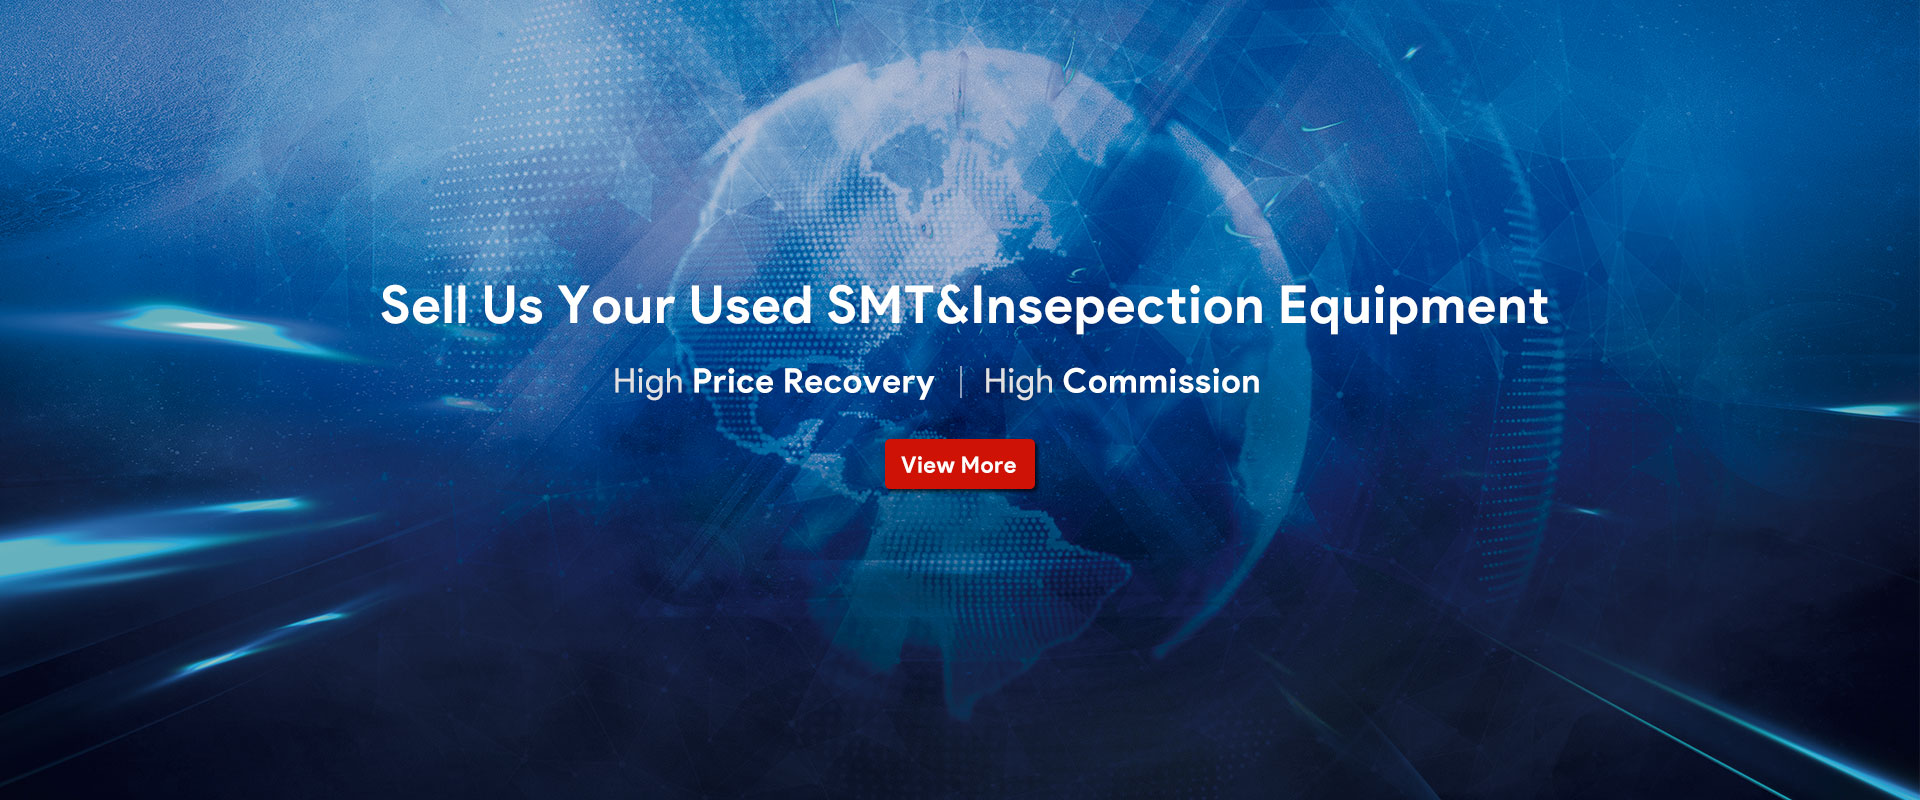 Verkaufen Sie uns Ihre gebrauchten SMT&Insepection-Geräte